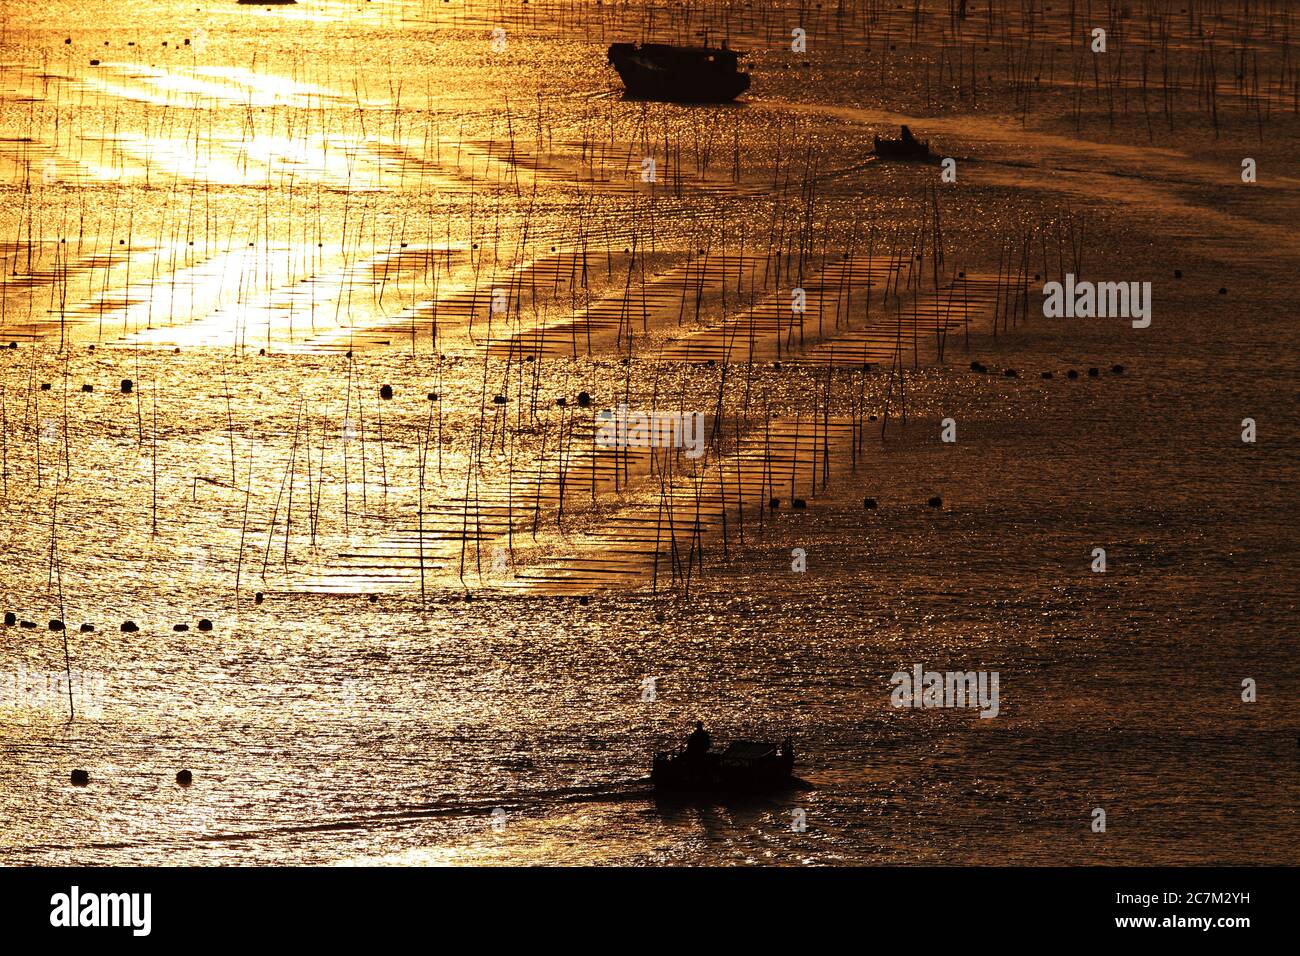 Silhouette des gens sur les bateaux de pêche dans l'océan au coucher du soleil à Xia pu, Chine Banque D'Images